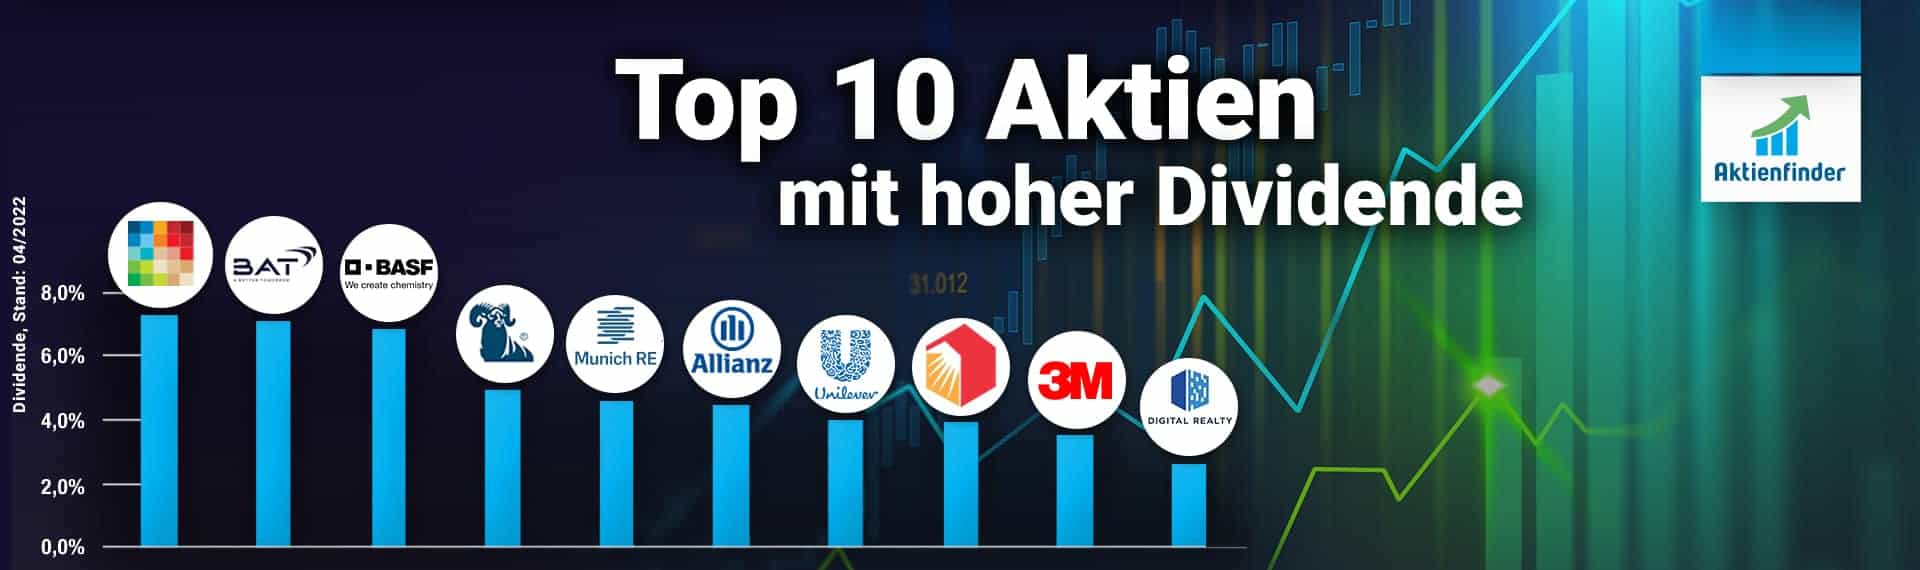 Top 10 Aktien mit hoher Dividende